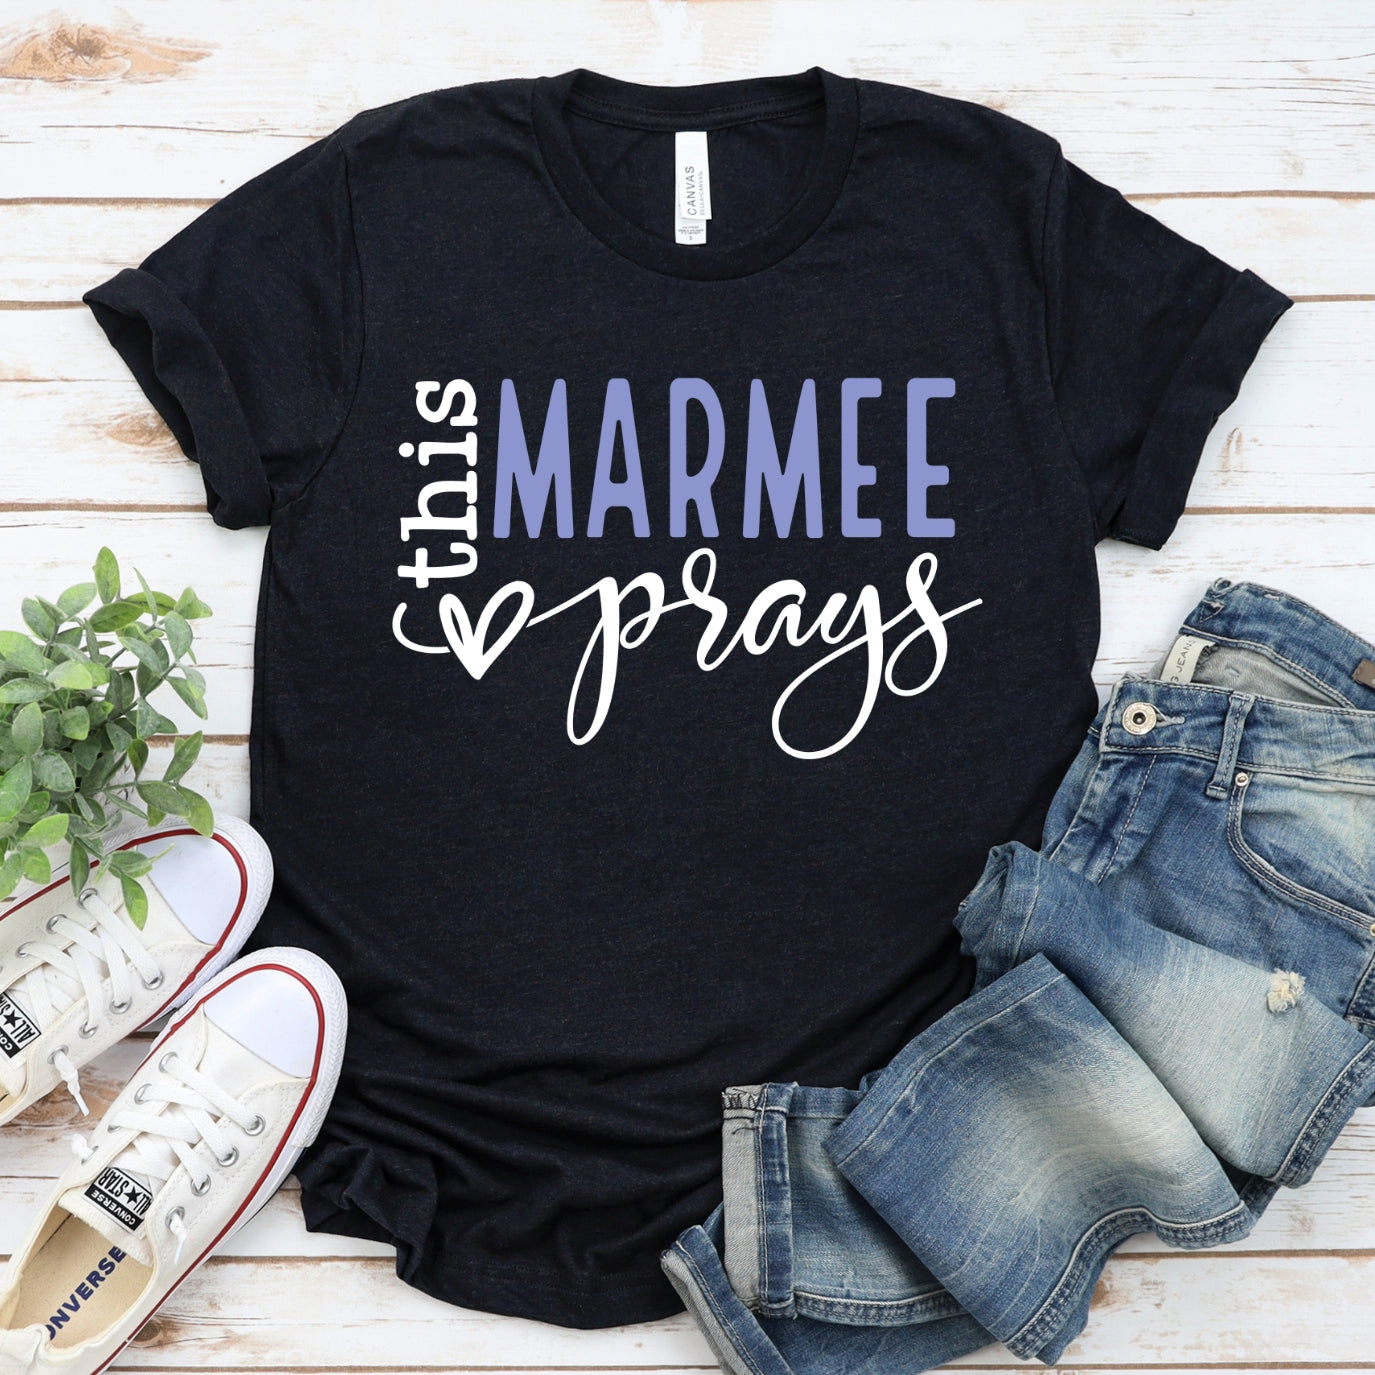 This Marmee Prays Women's T-Shirt